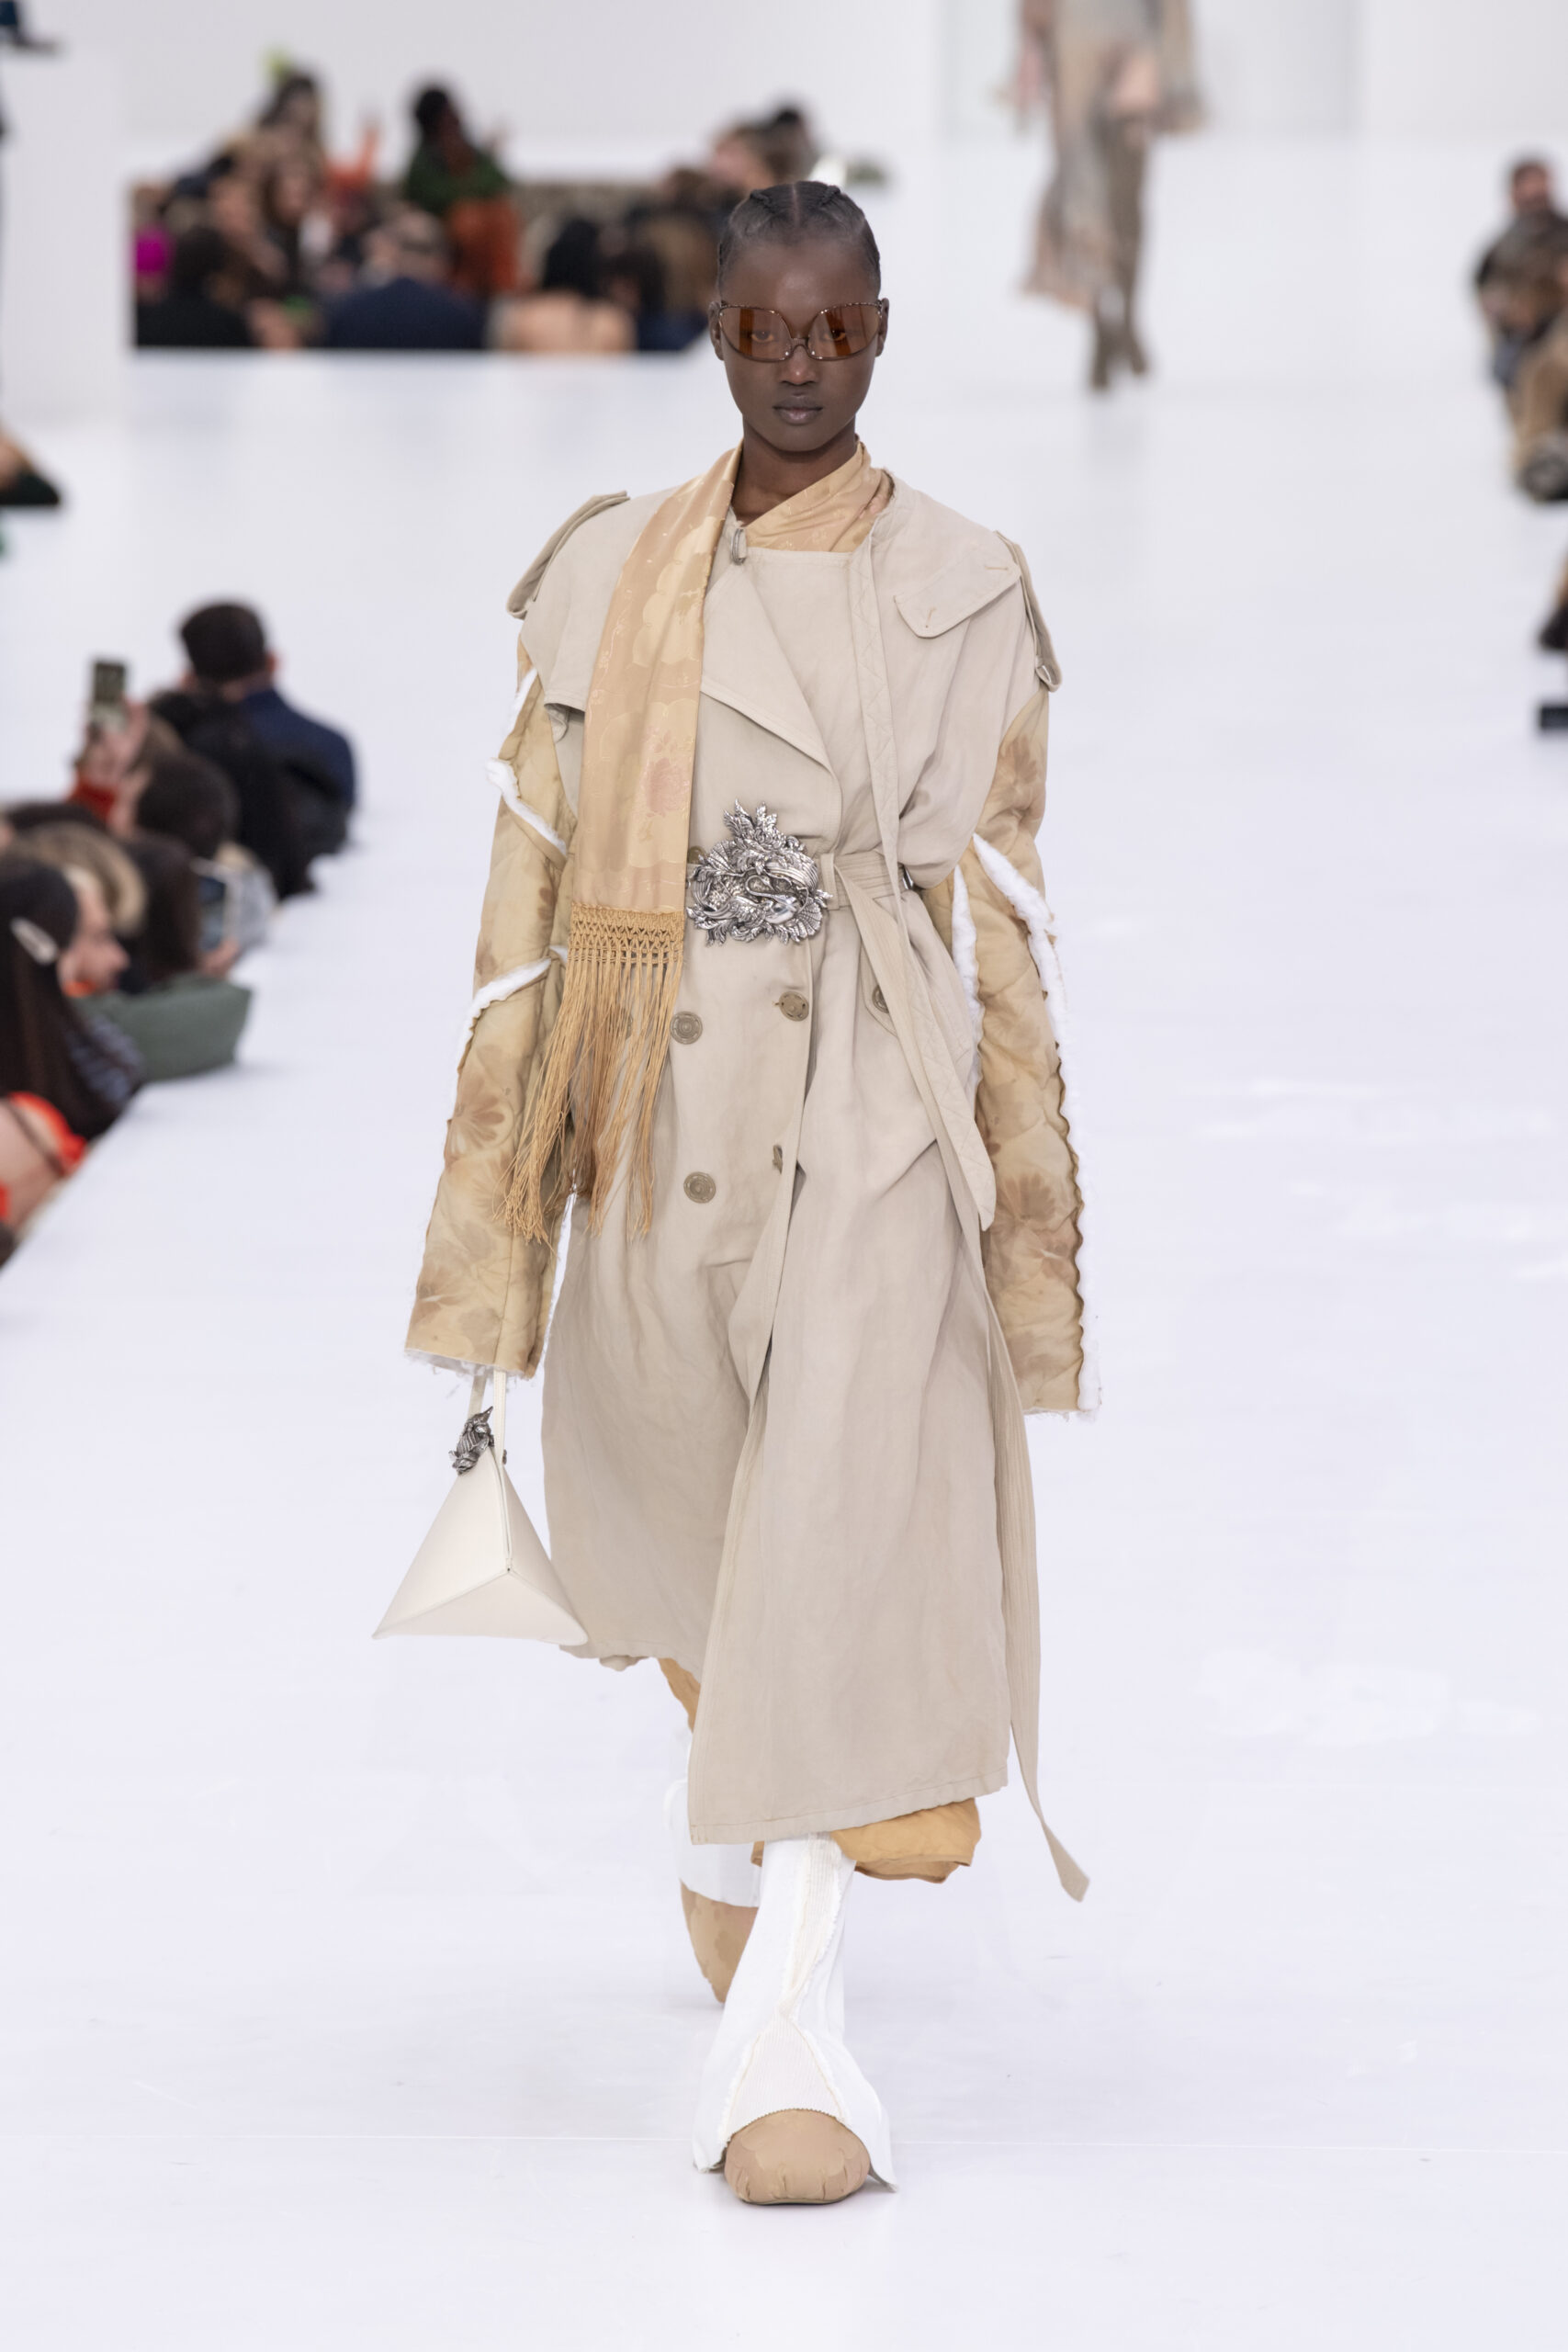 Egy modell az Acne Studios ruhájában sétál a Párizsi Fashion Week bemutatóján